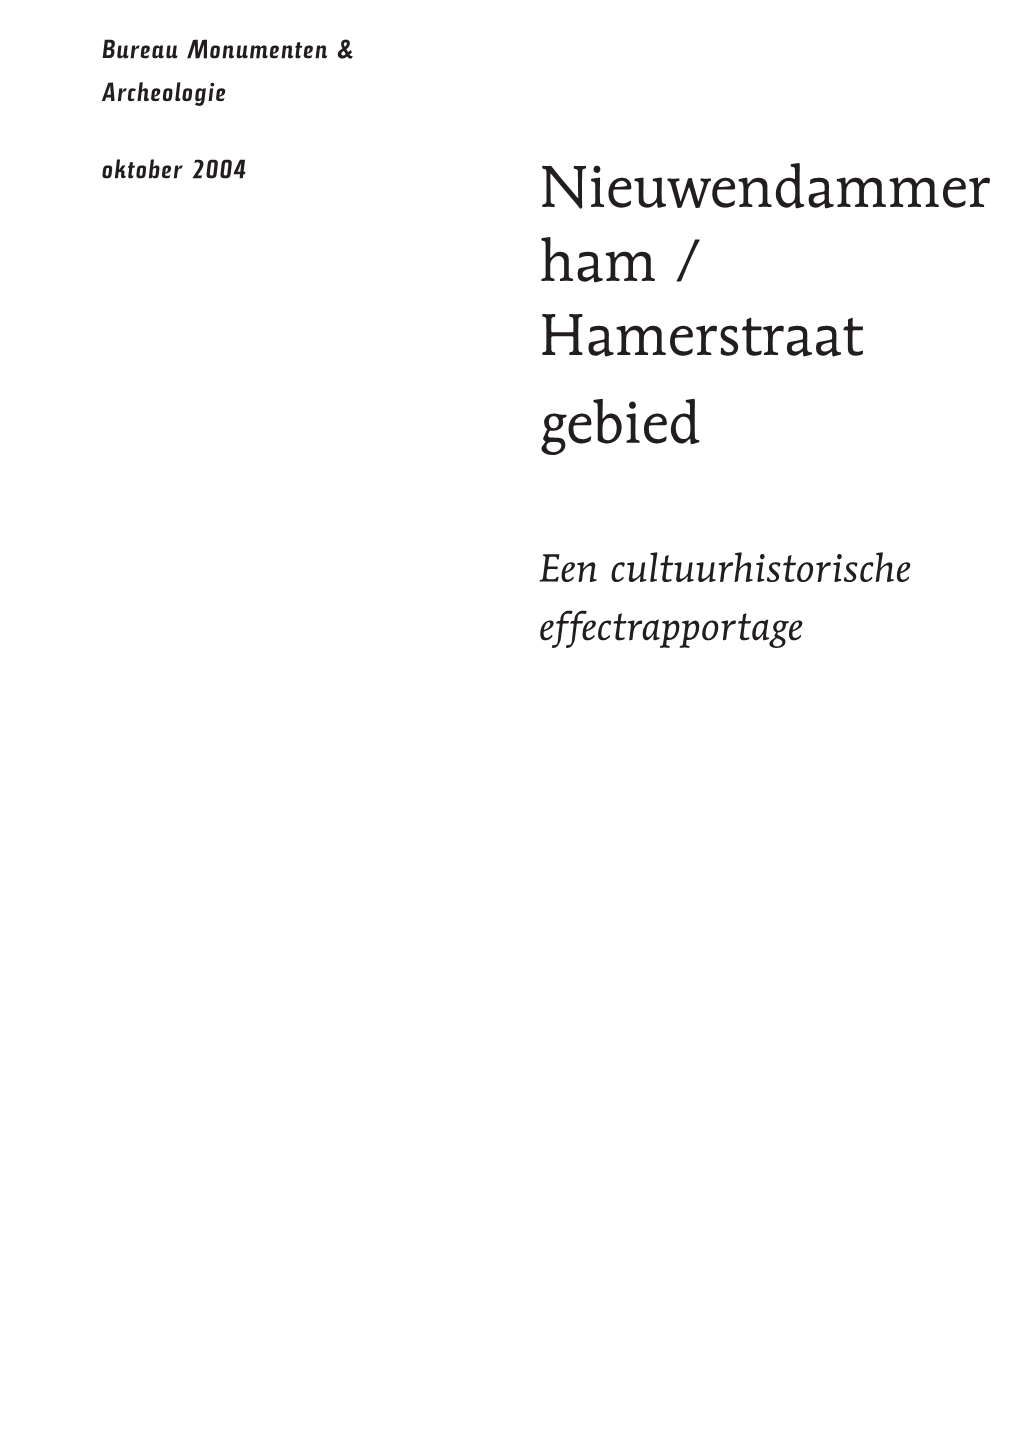 CHER Hamerstraat Def 20041022